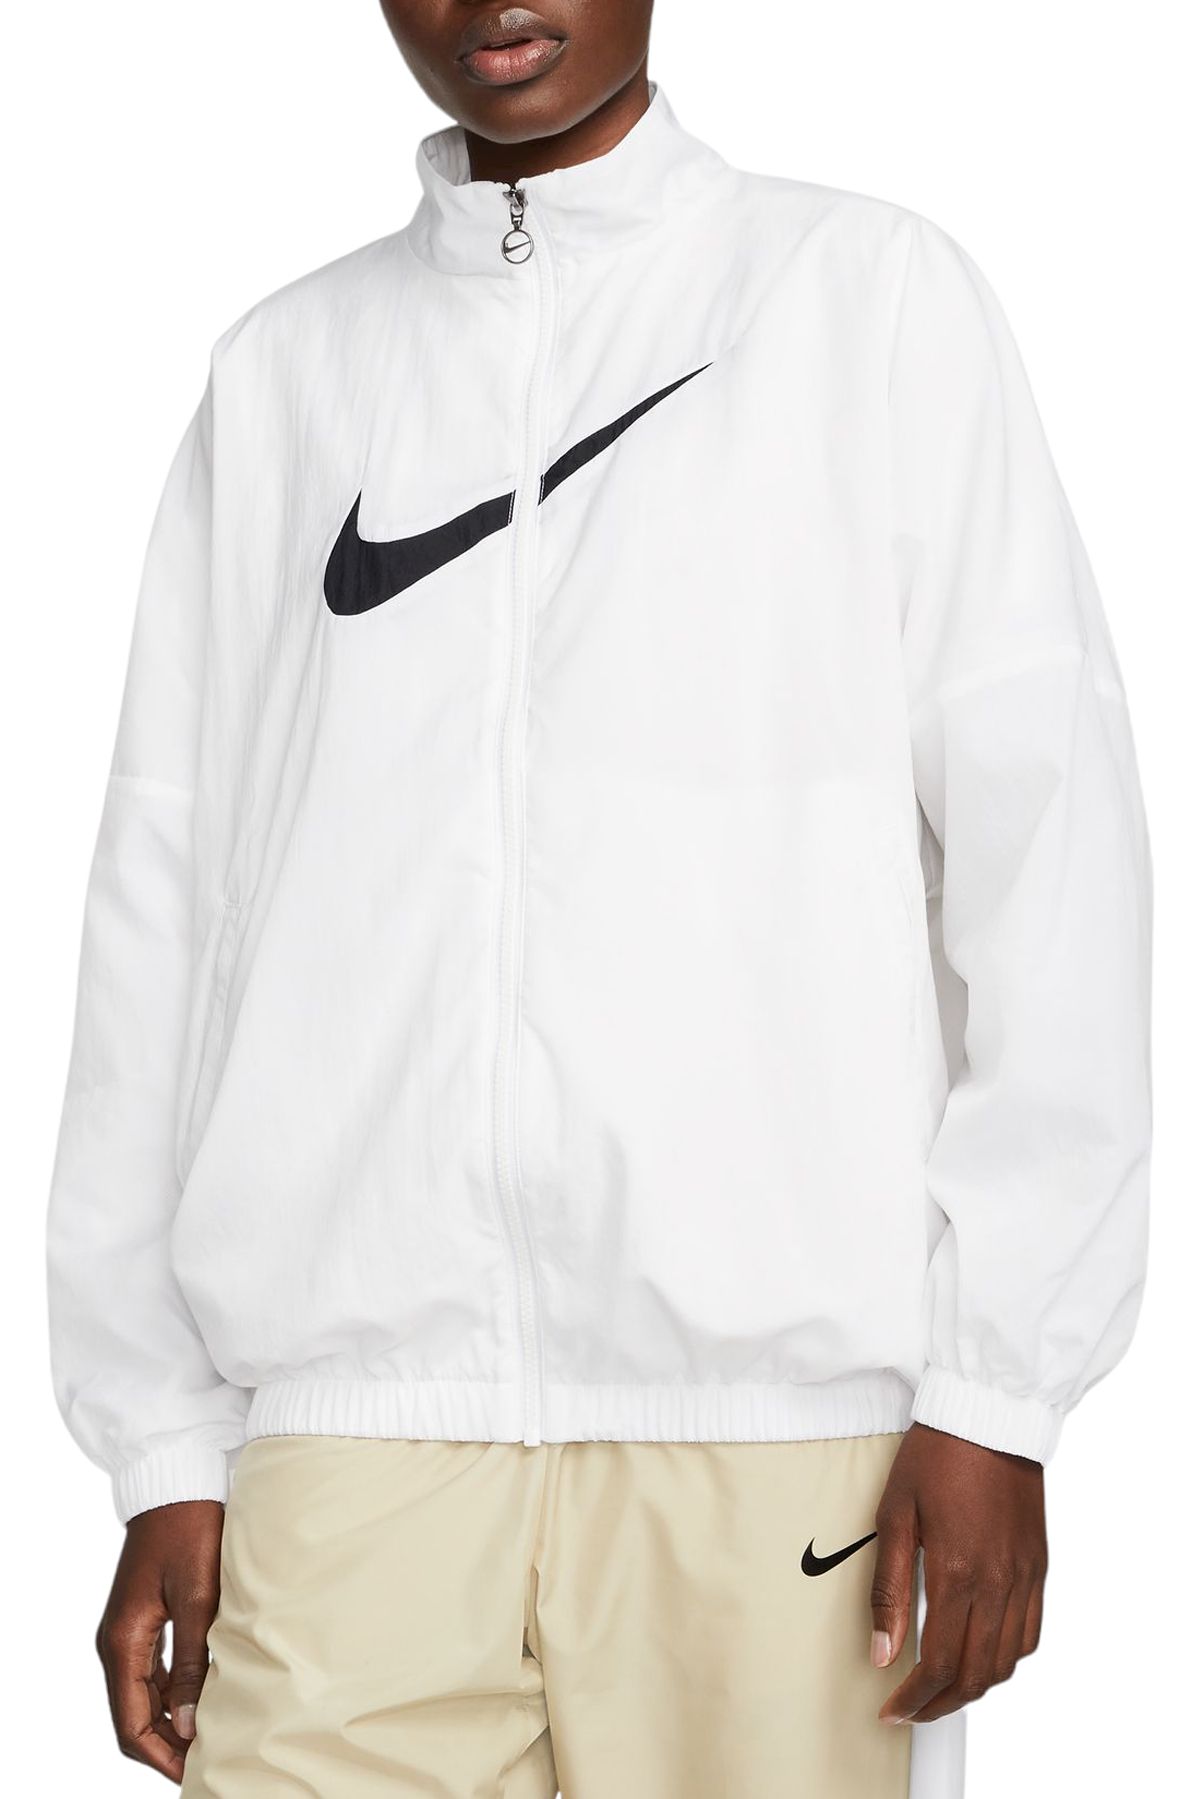 Nike Sportswear Women's Essential Woven Jacket Black / White